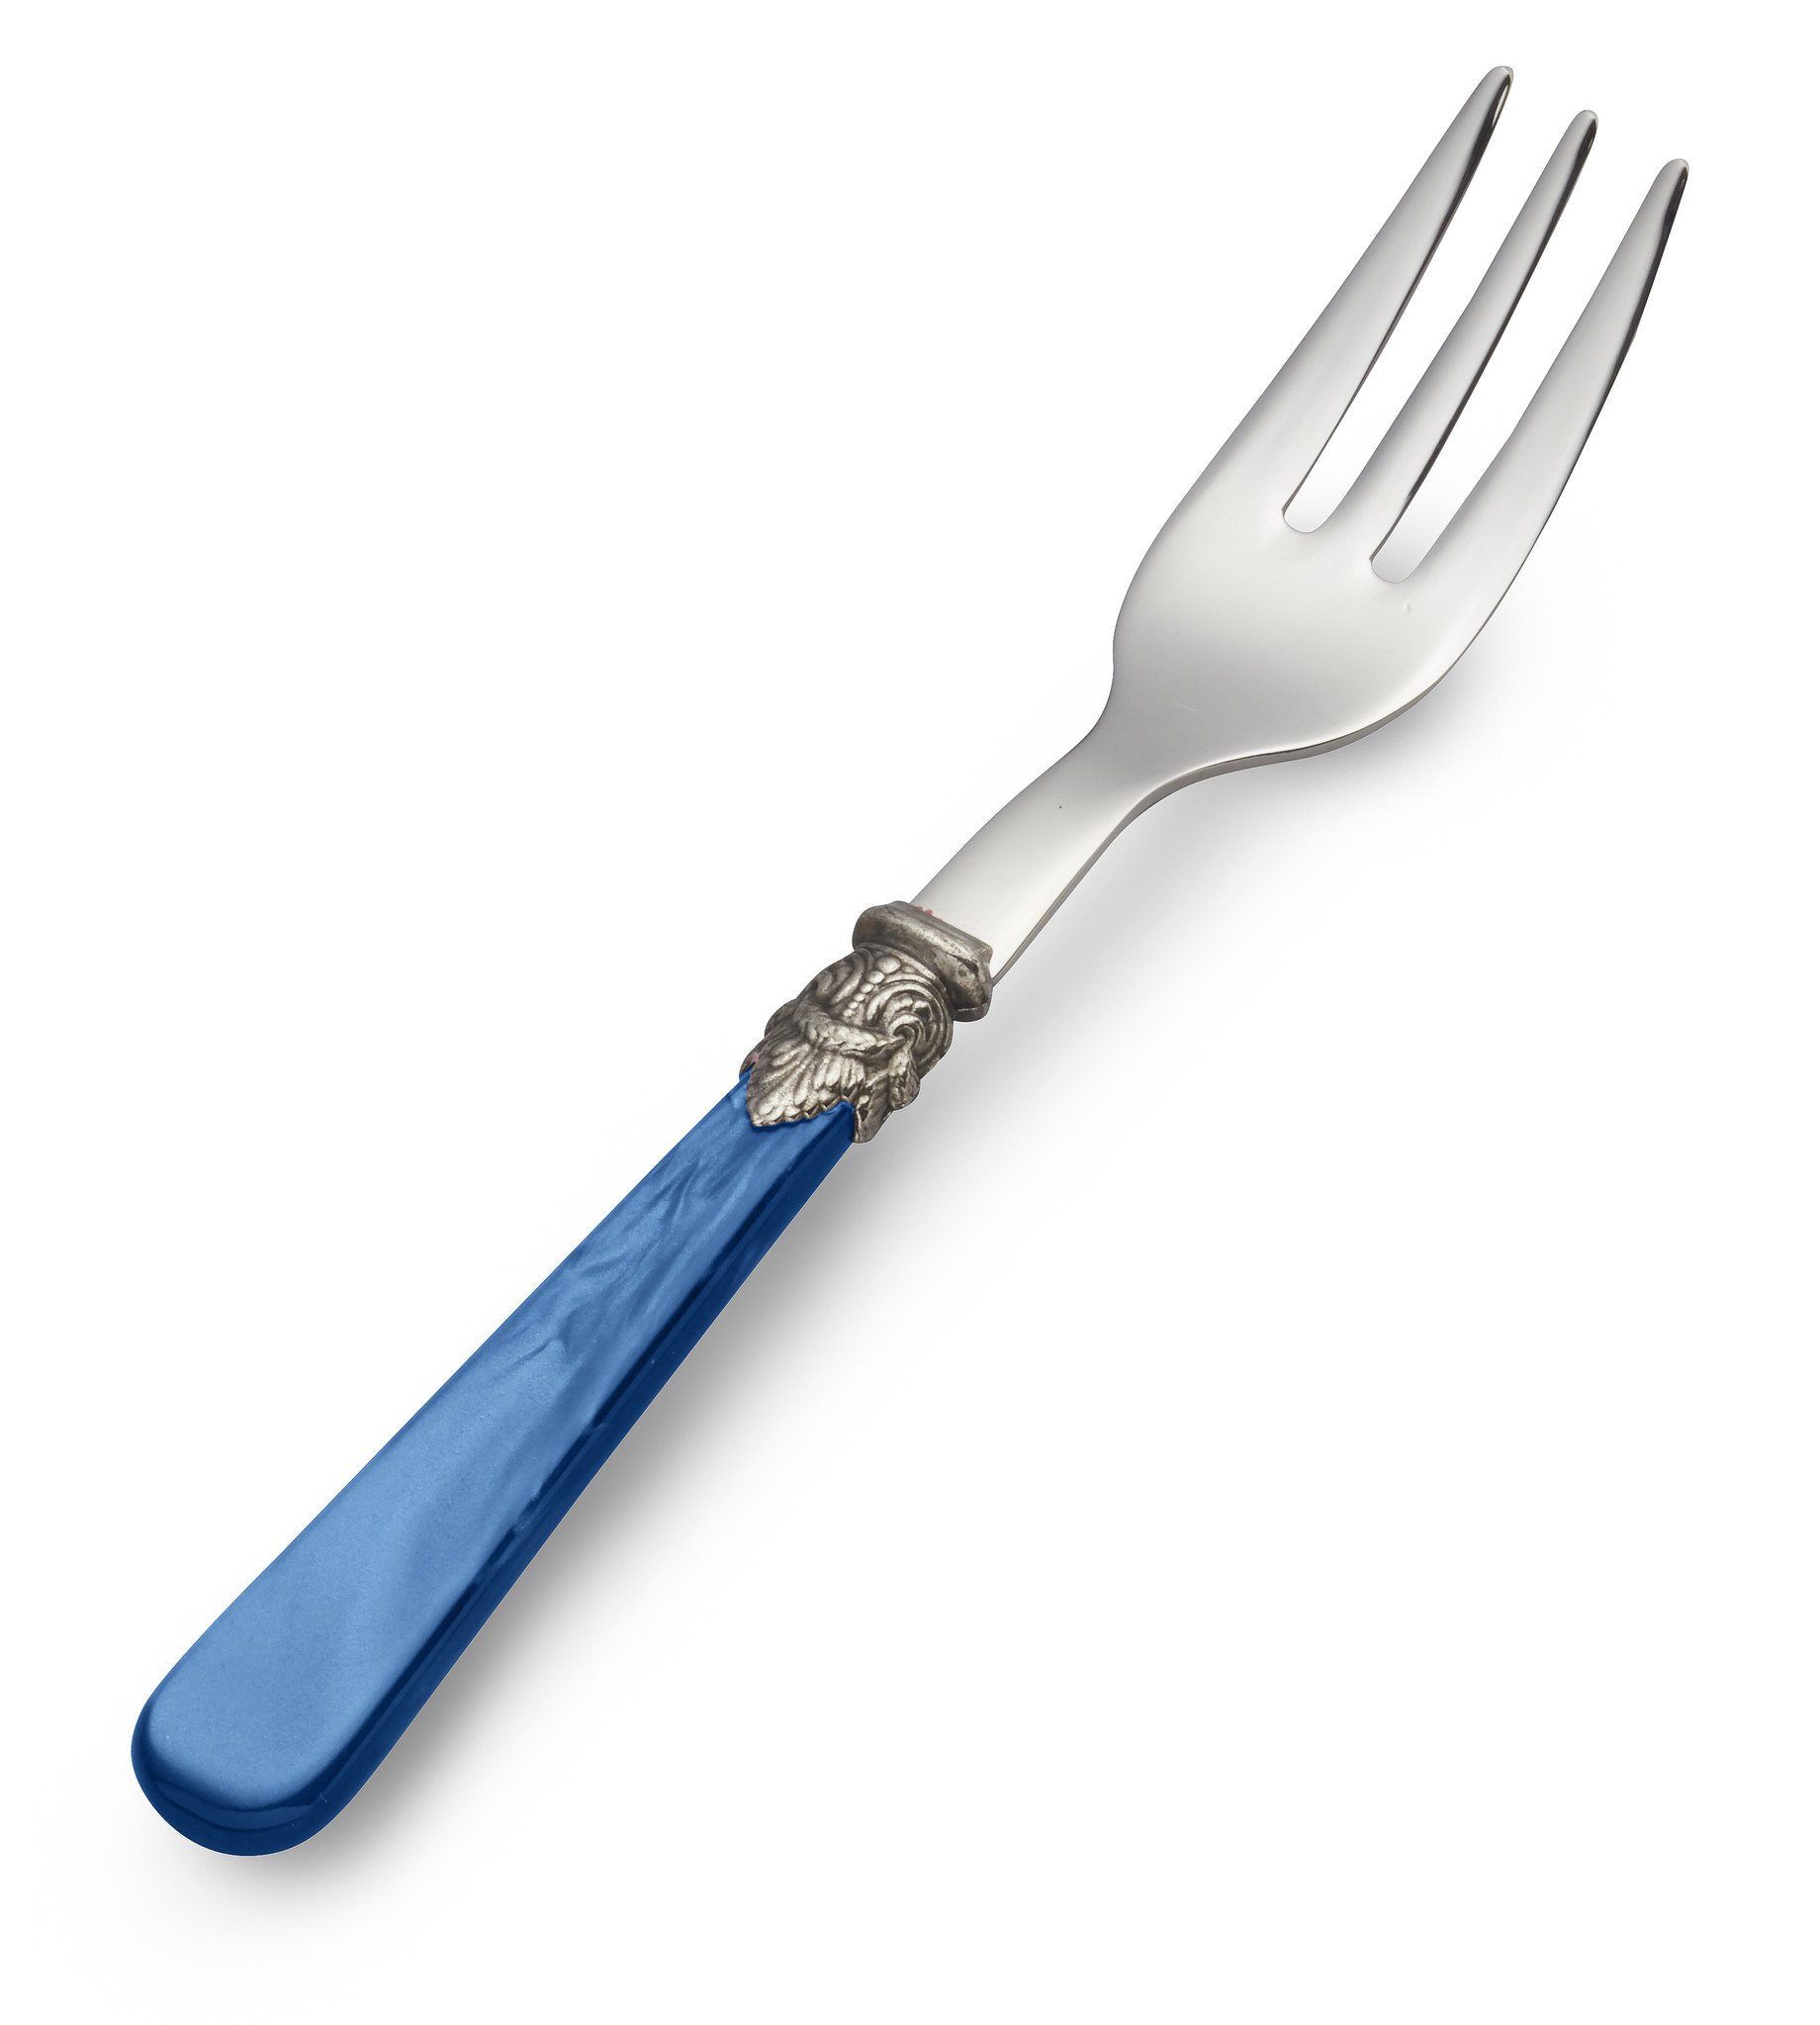 Blue Italian Pastry Forks Set of 6